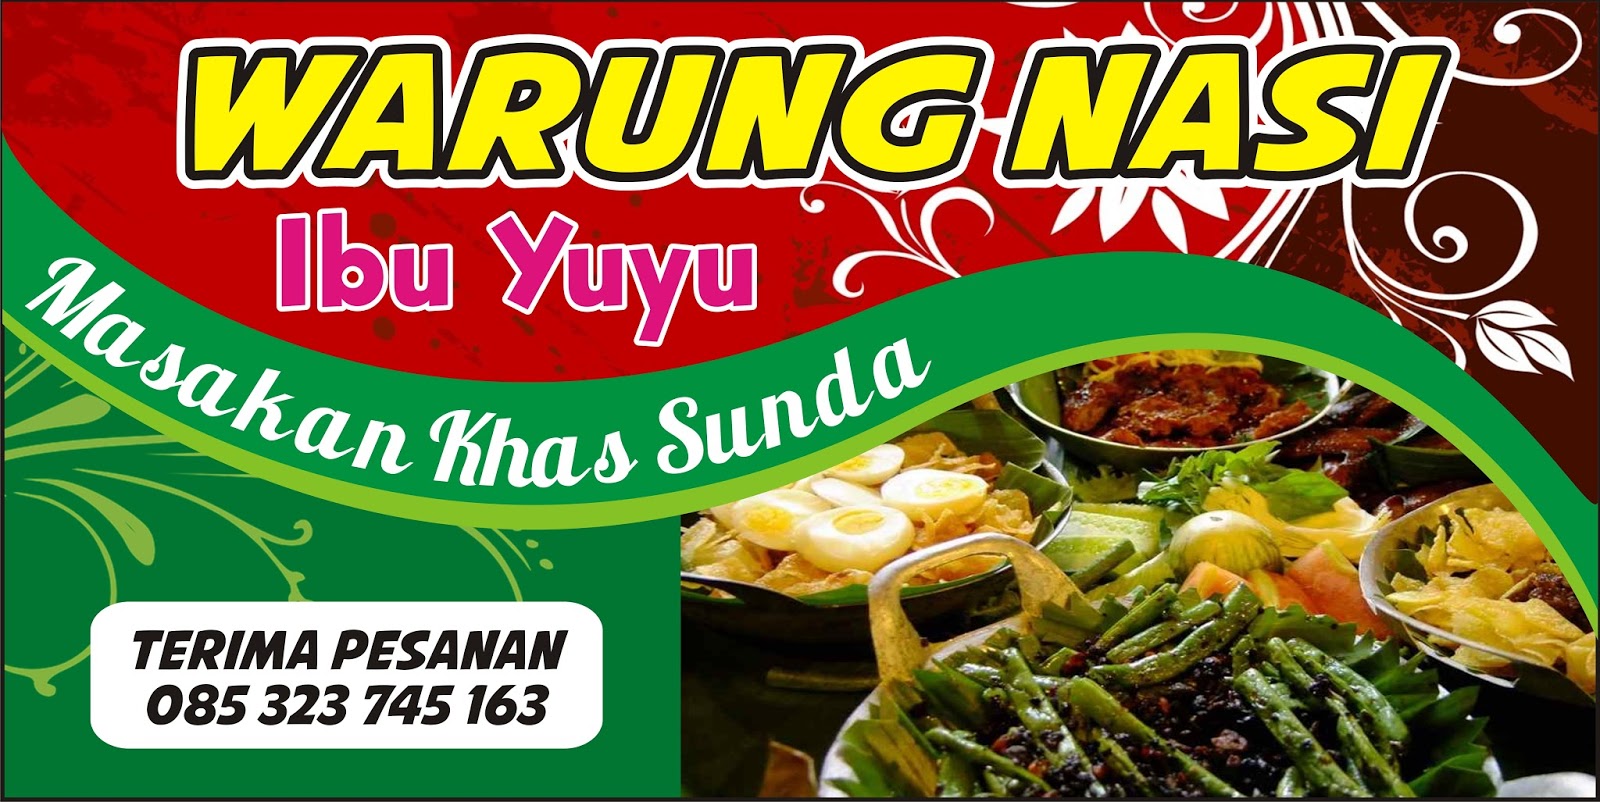 Contoh Spanduk Warung Nasi.cdr - KARYAKU